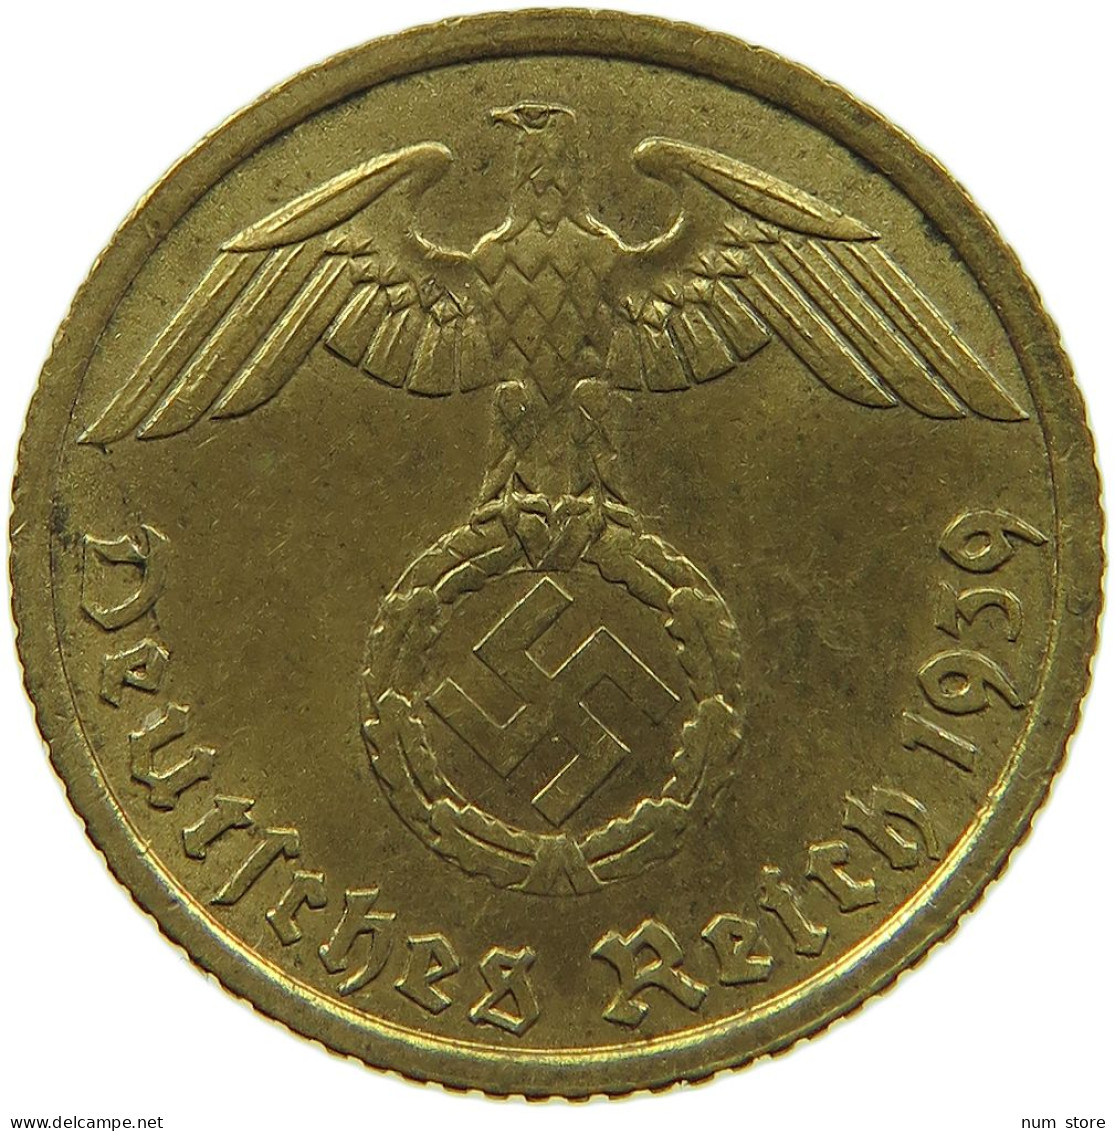 GERMANY 5 REICHSPFENNIG 1939 A #s091 0751 - 5 Reichspfennig